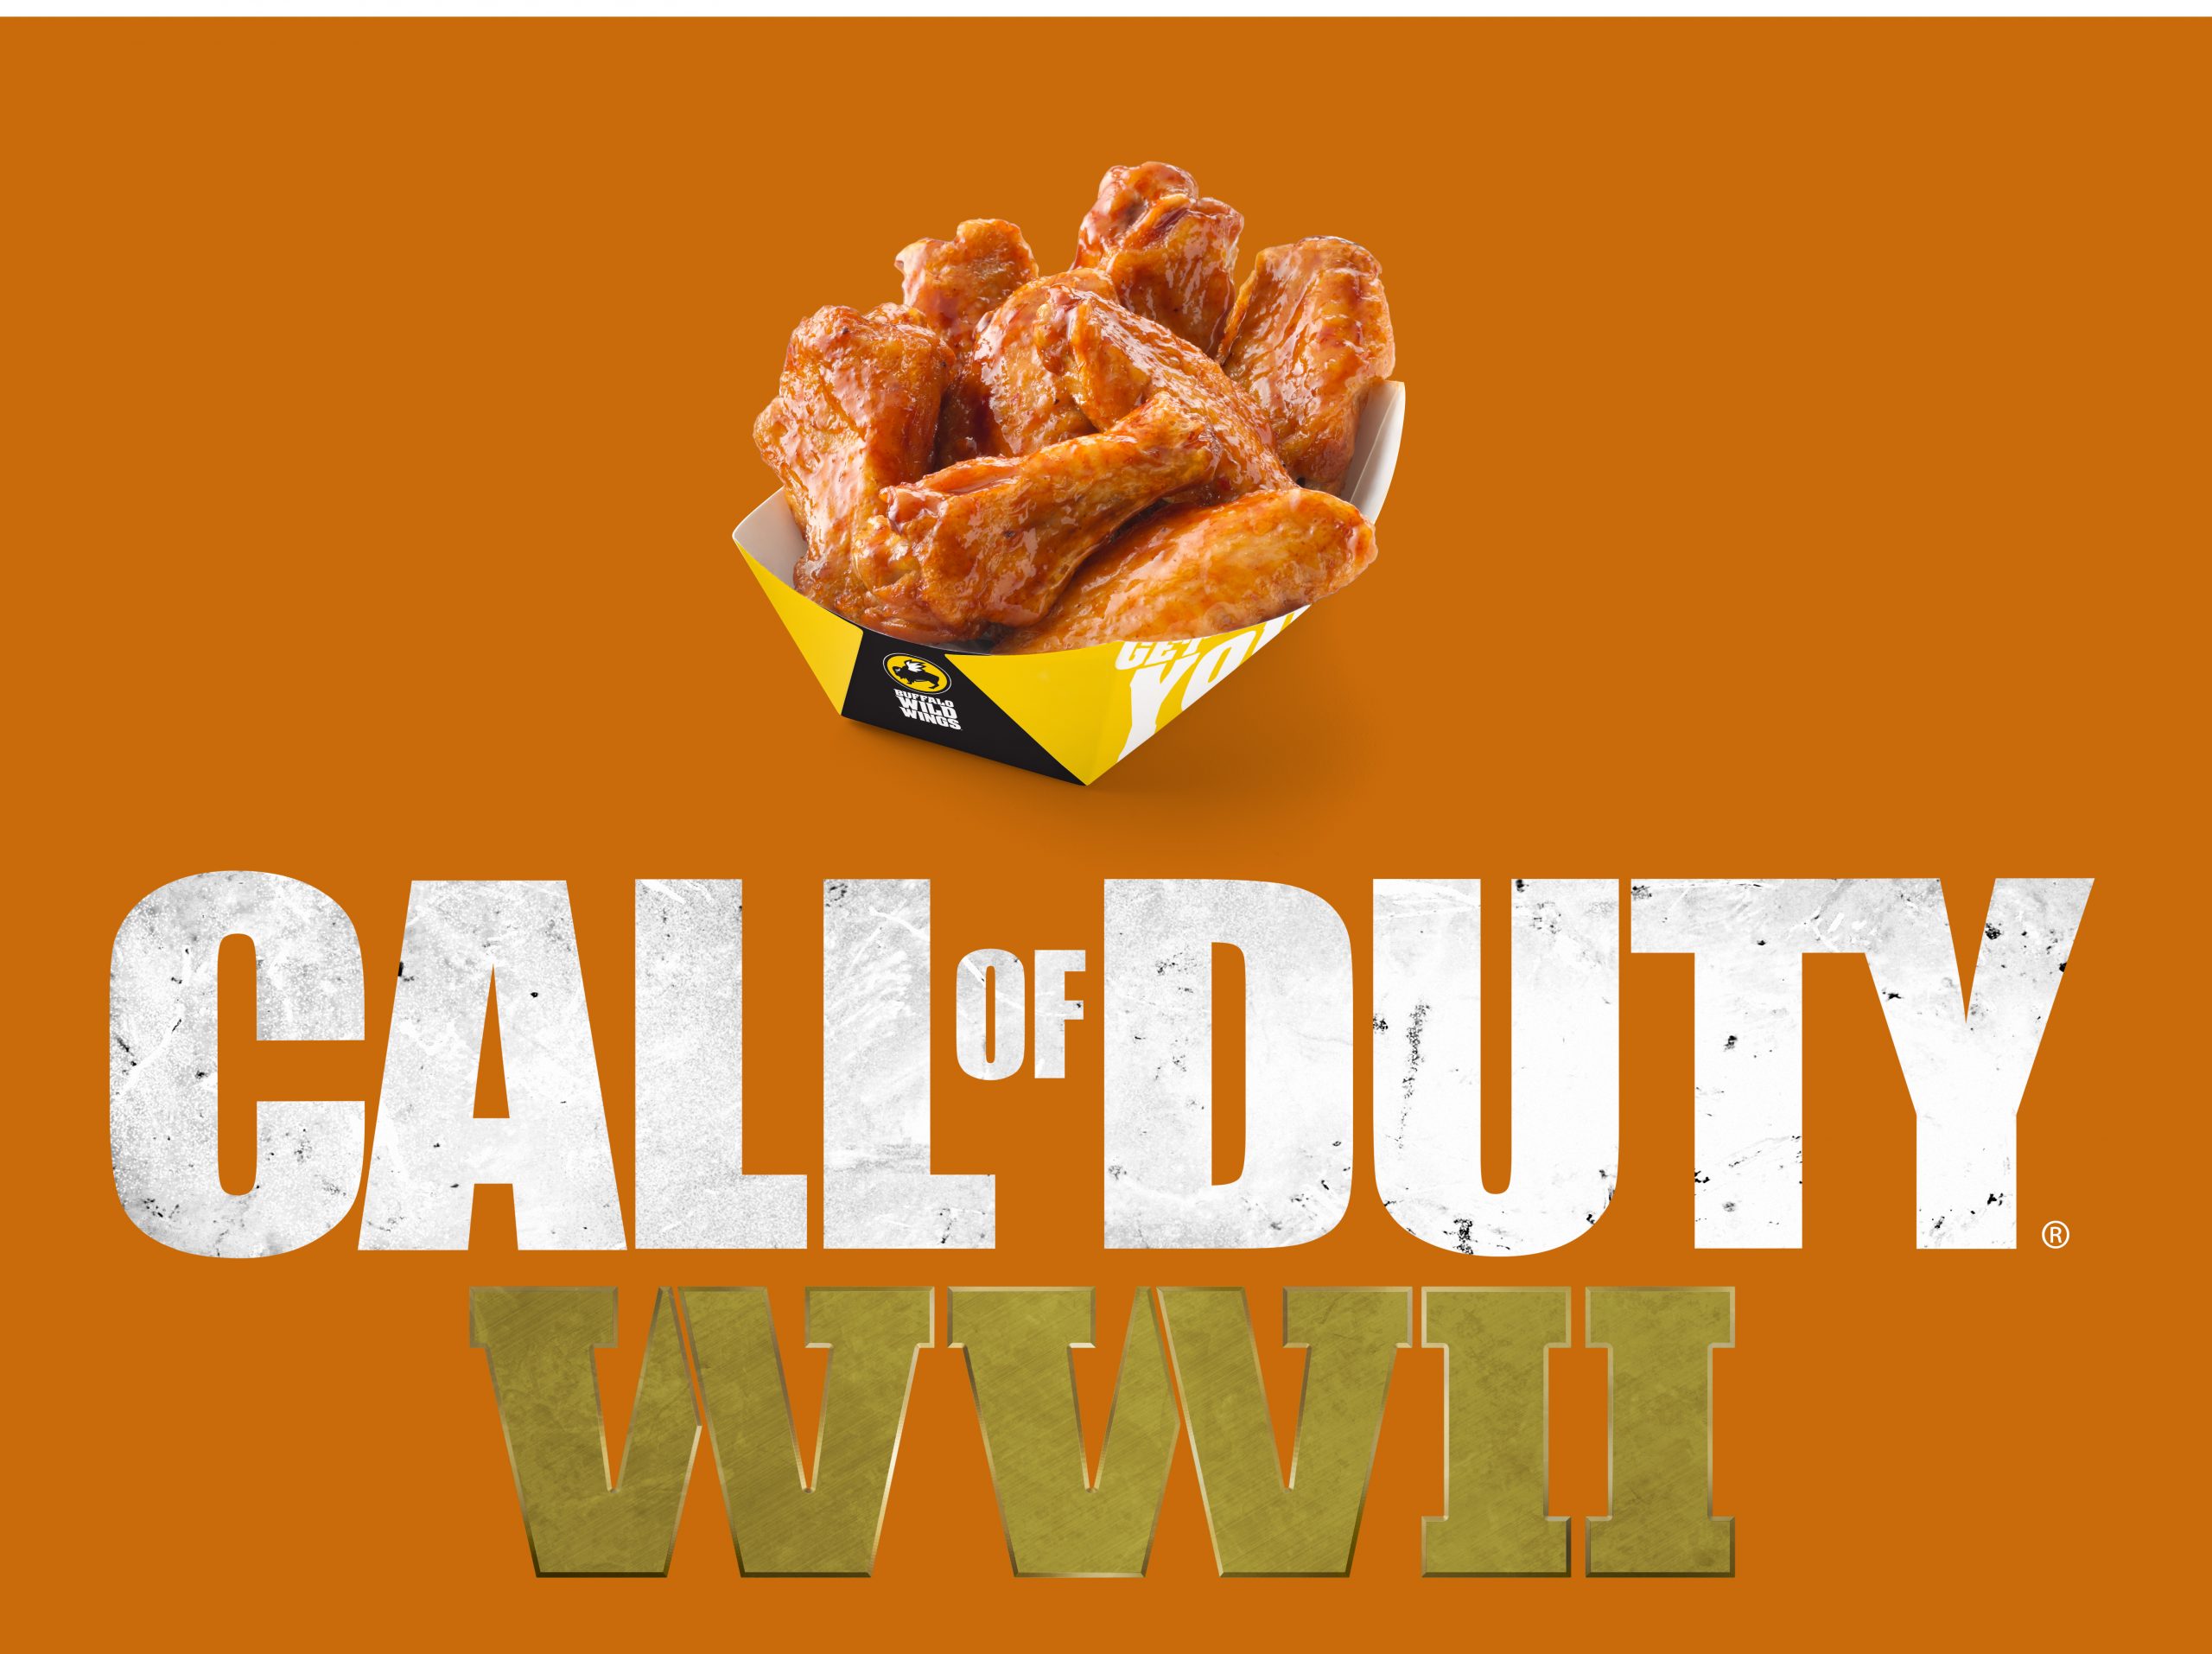 Detalles de Call of Duty: WWII Double XP: Cómo obtener 2XP gratis